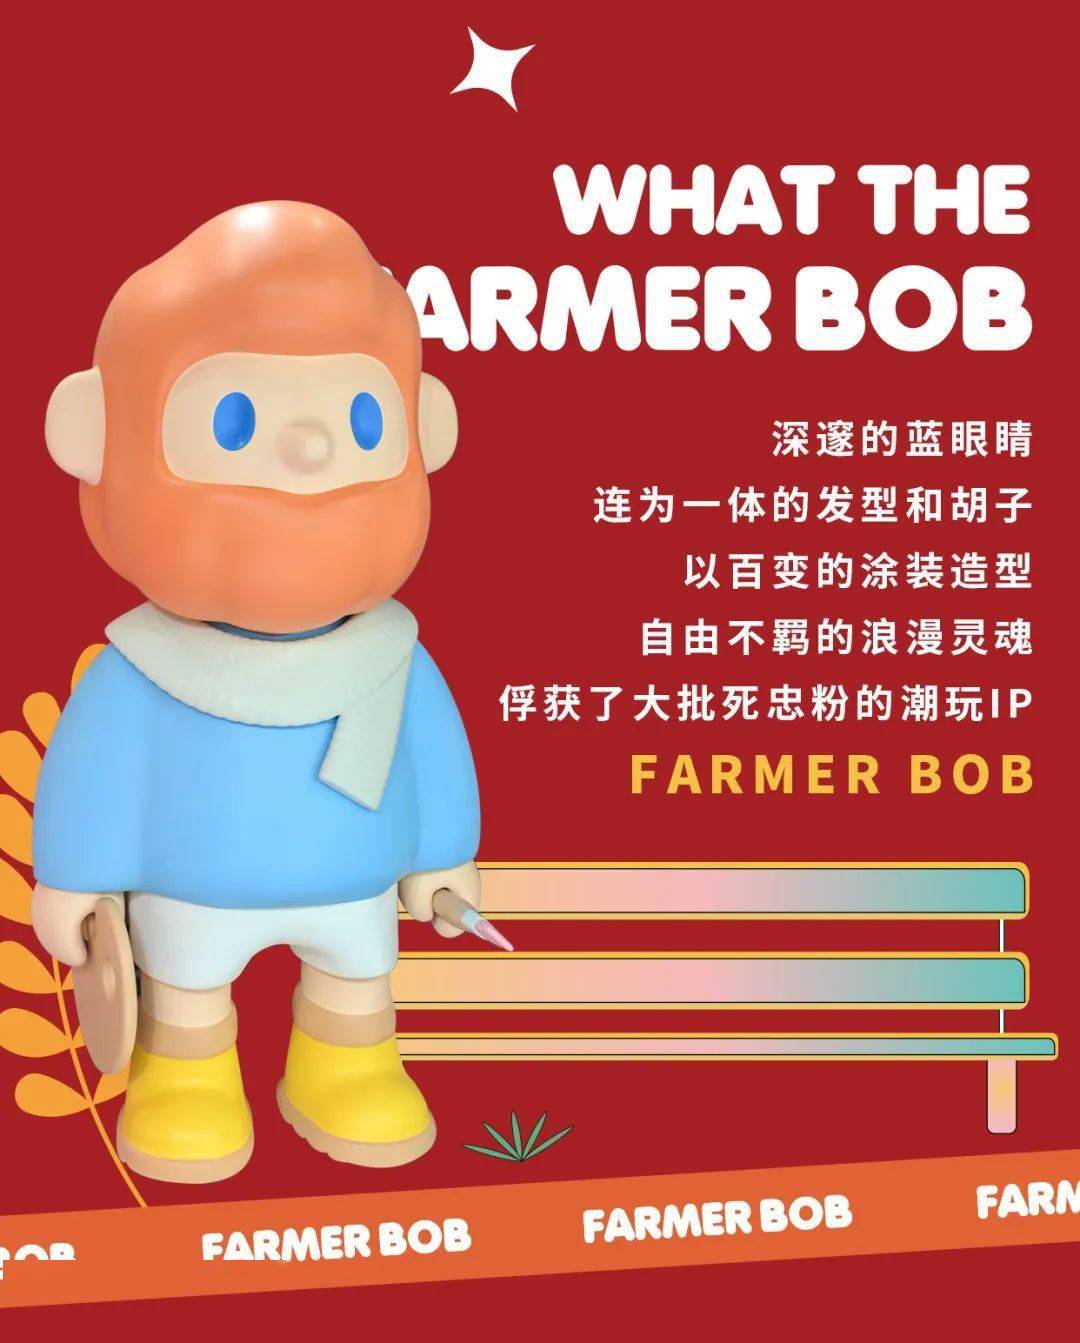 潮玩界巨星farmer bob空降城西银泰城!带来七重惊喜好